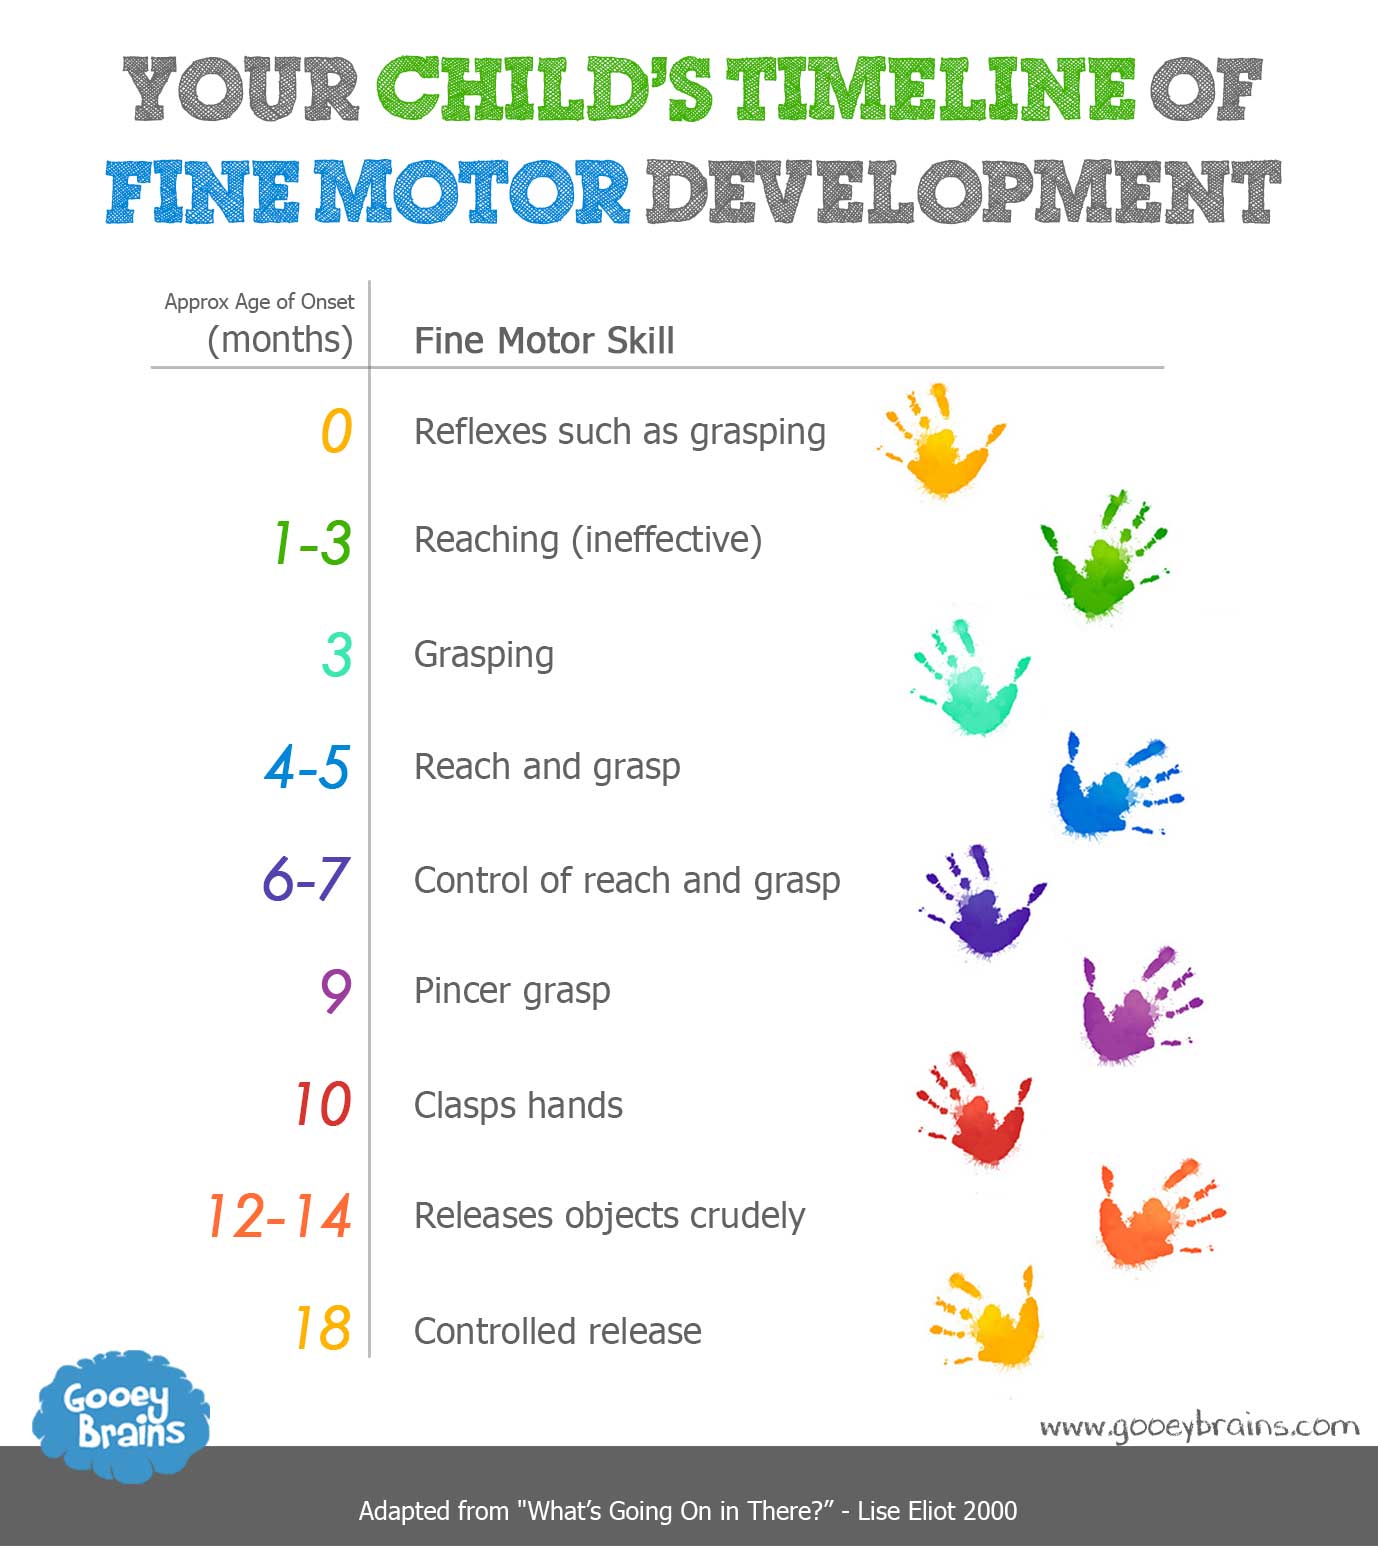 Which motor skills develop last?